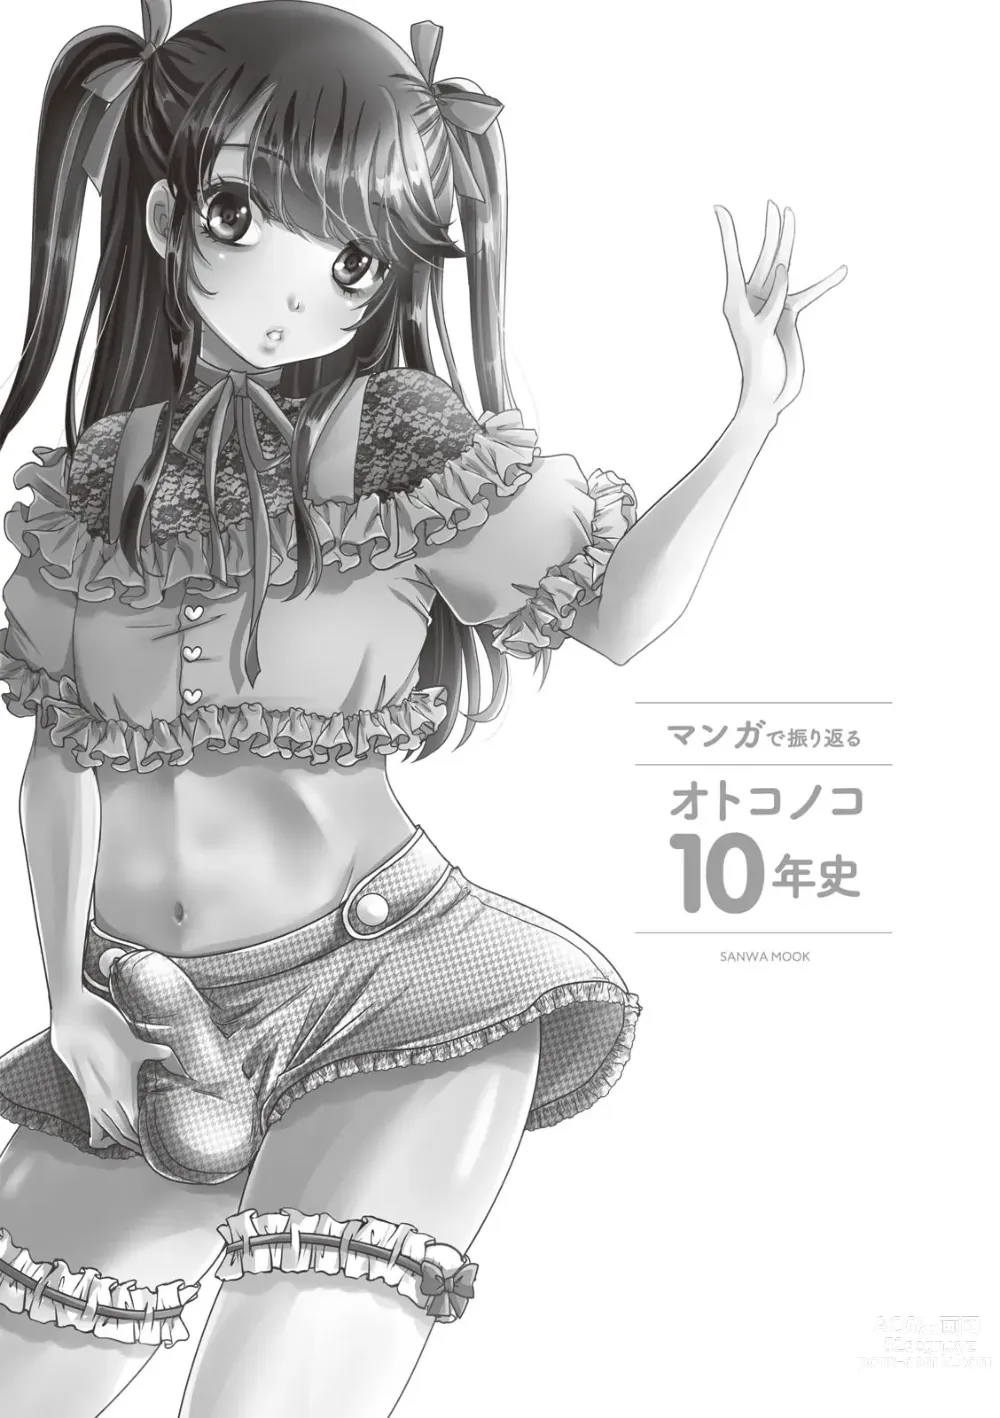 Page 3 of manga Manga de Furikaeru Otokonoko 10-nenshi